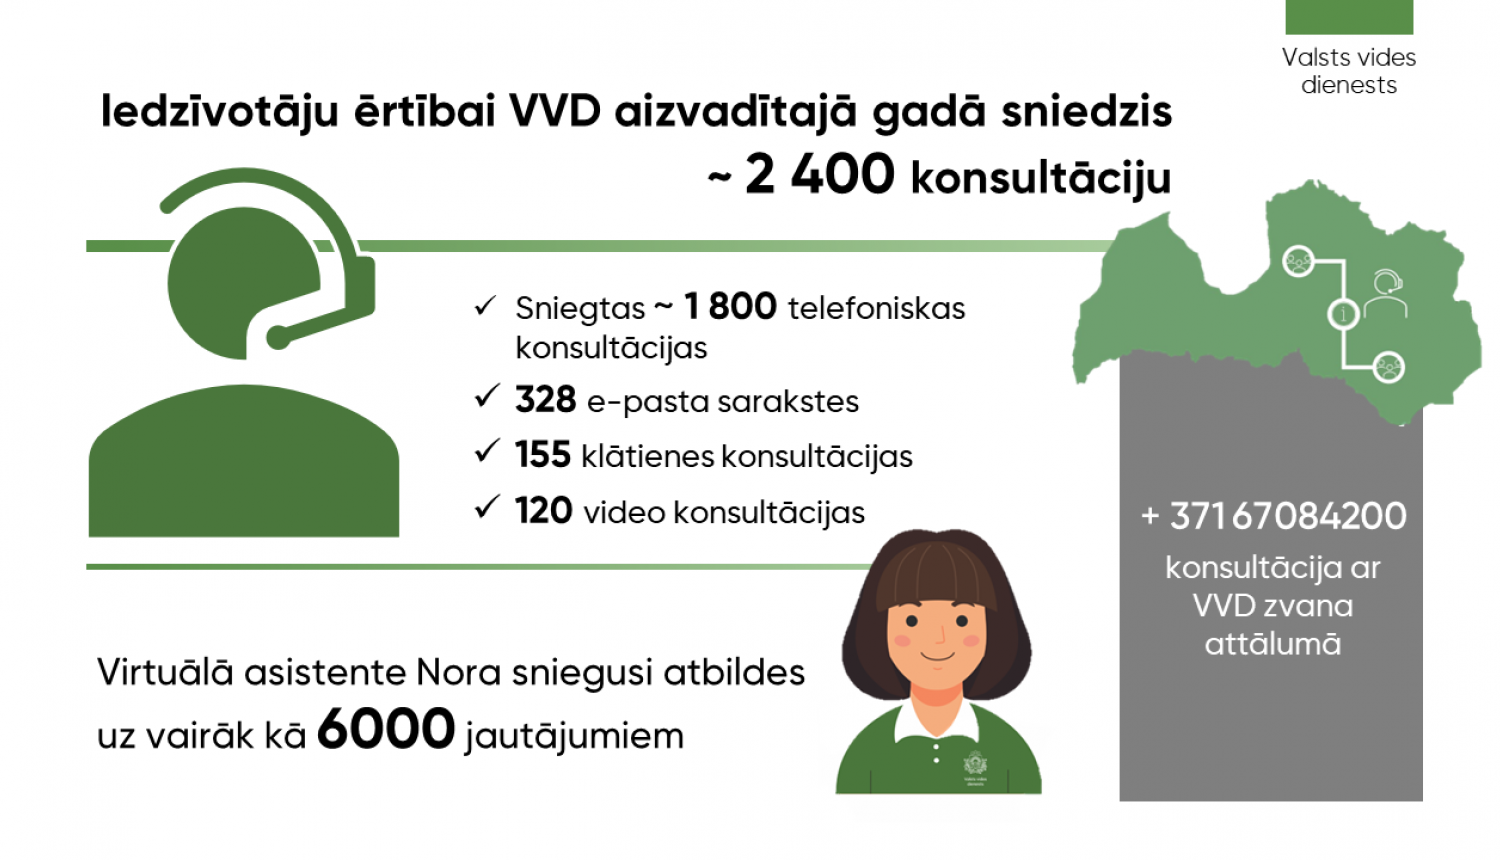 Iedzīvotāju ērtībai VVD aizvadītajā gadā sniedzis ~ 2 400 konsultāciju